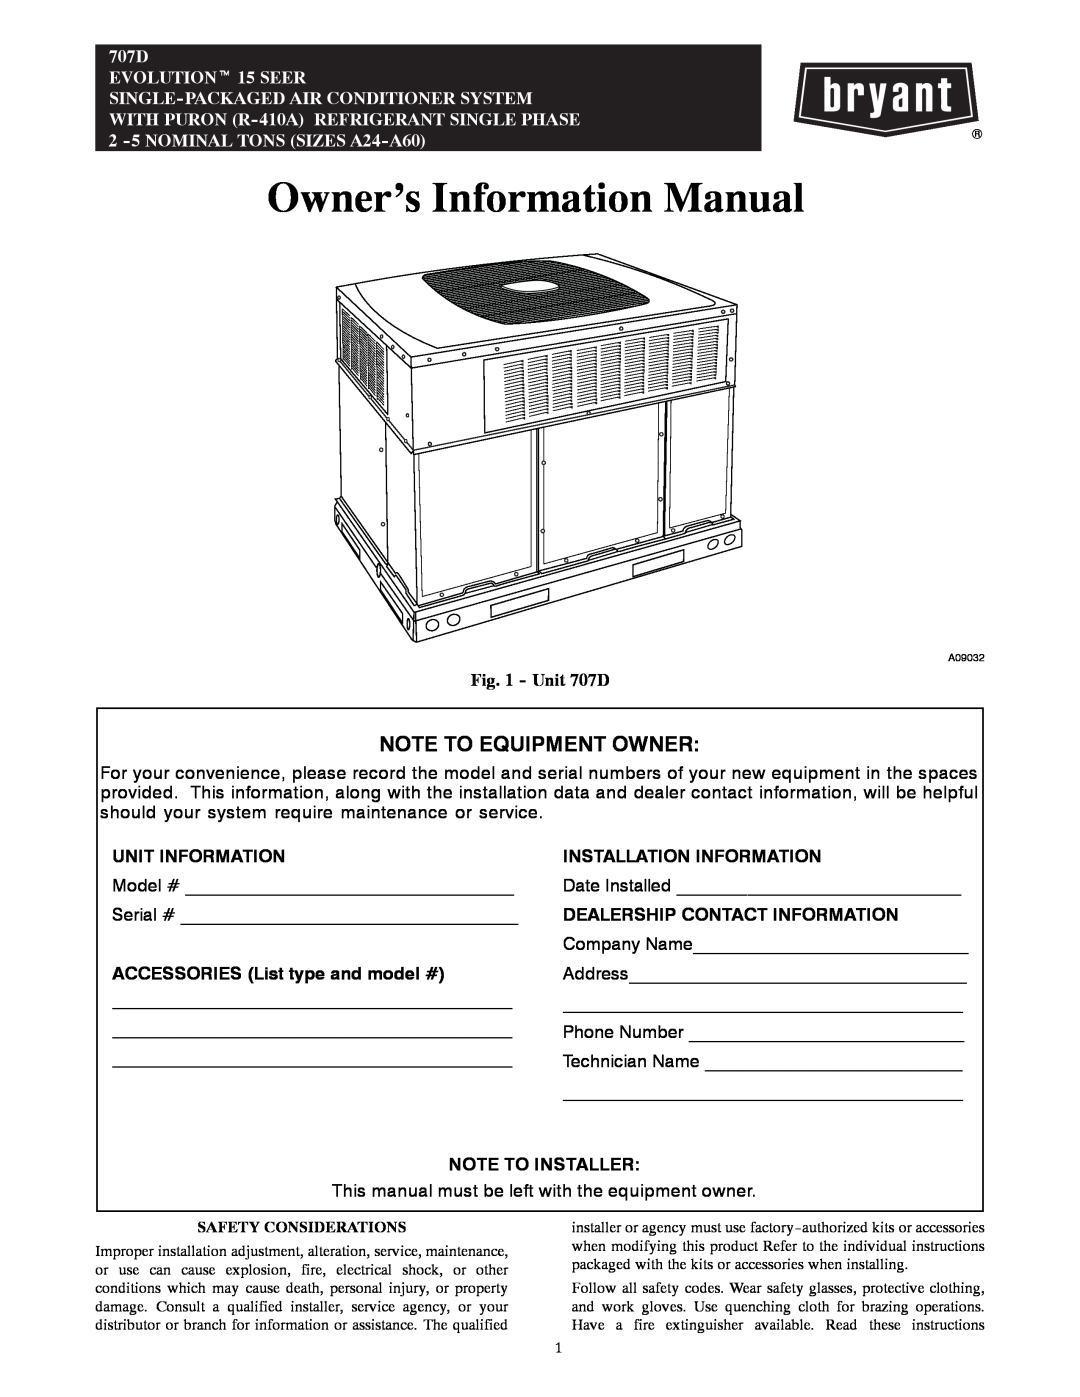 Bryant manual Unit 707D, Owner’s Information Manual, Note To Equipment Owner, Unit Information, Note To Installer 